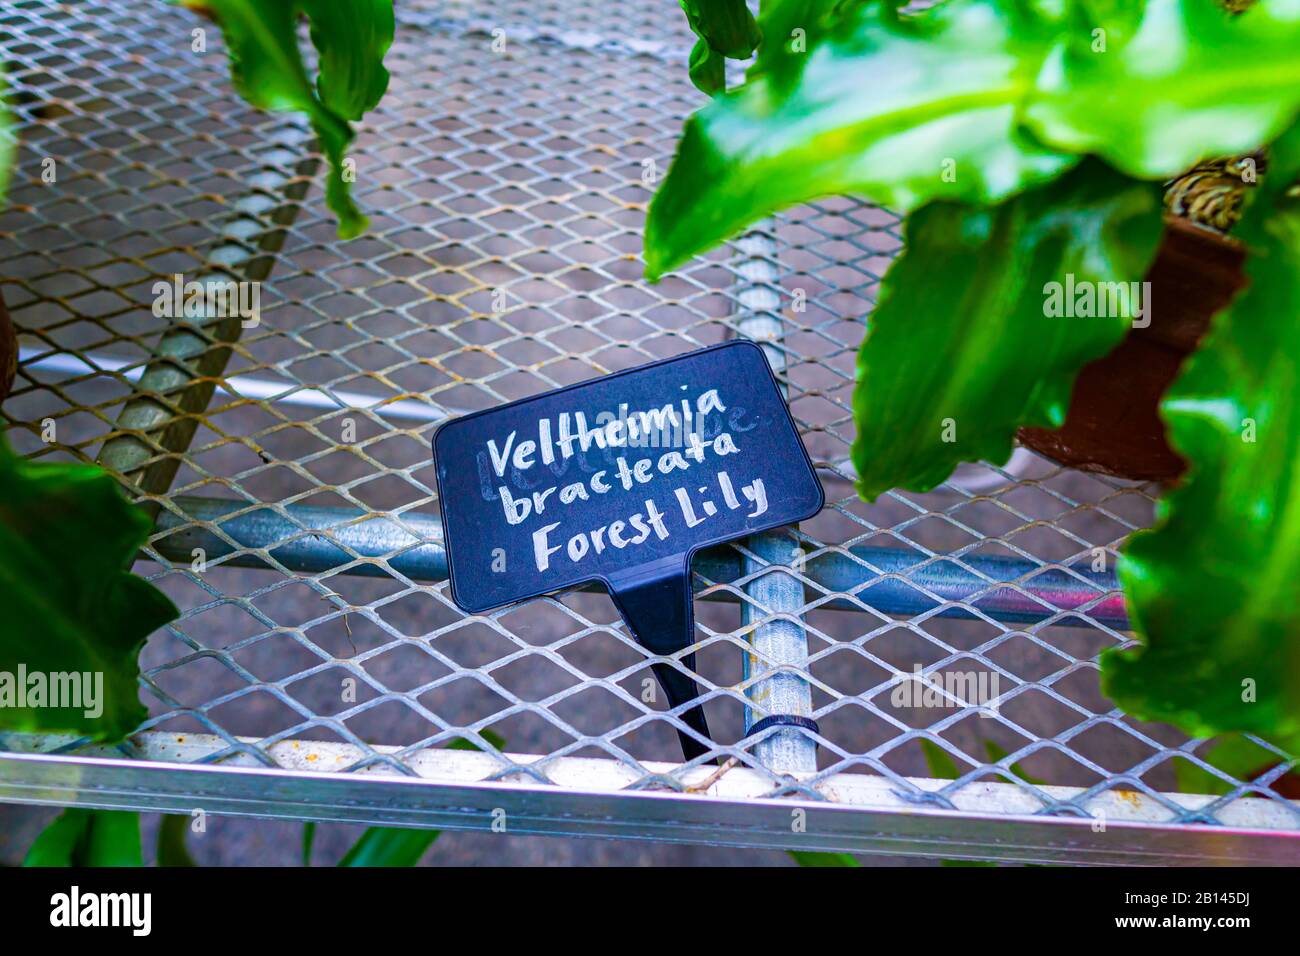 Veltheimia Bracteata Forest Lily Plant Stock Photo